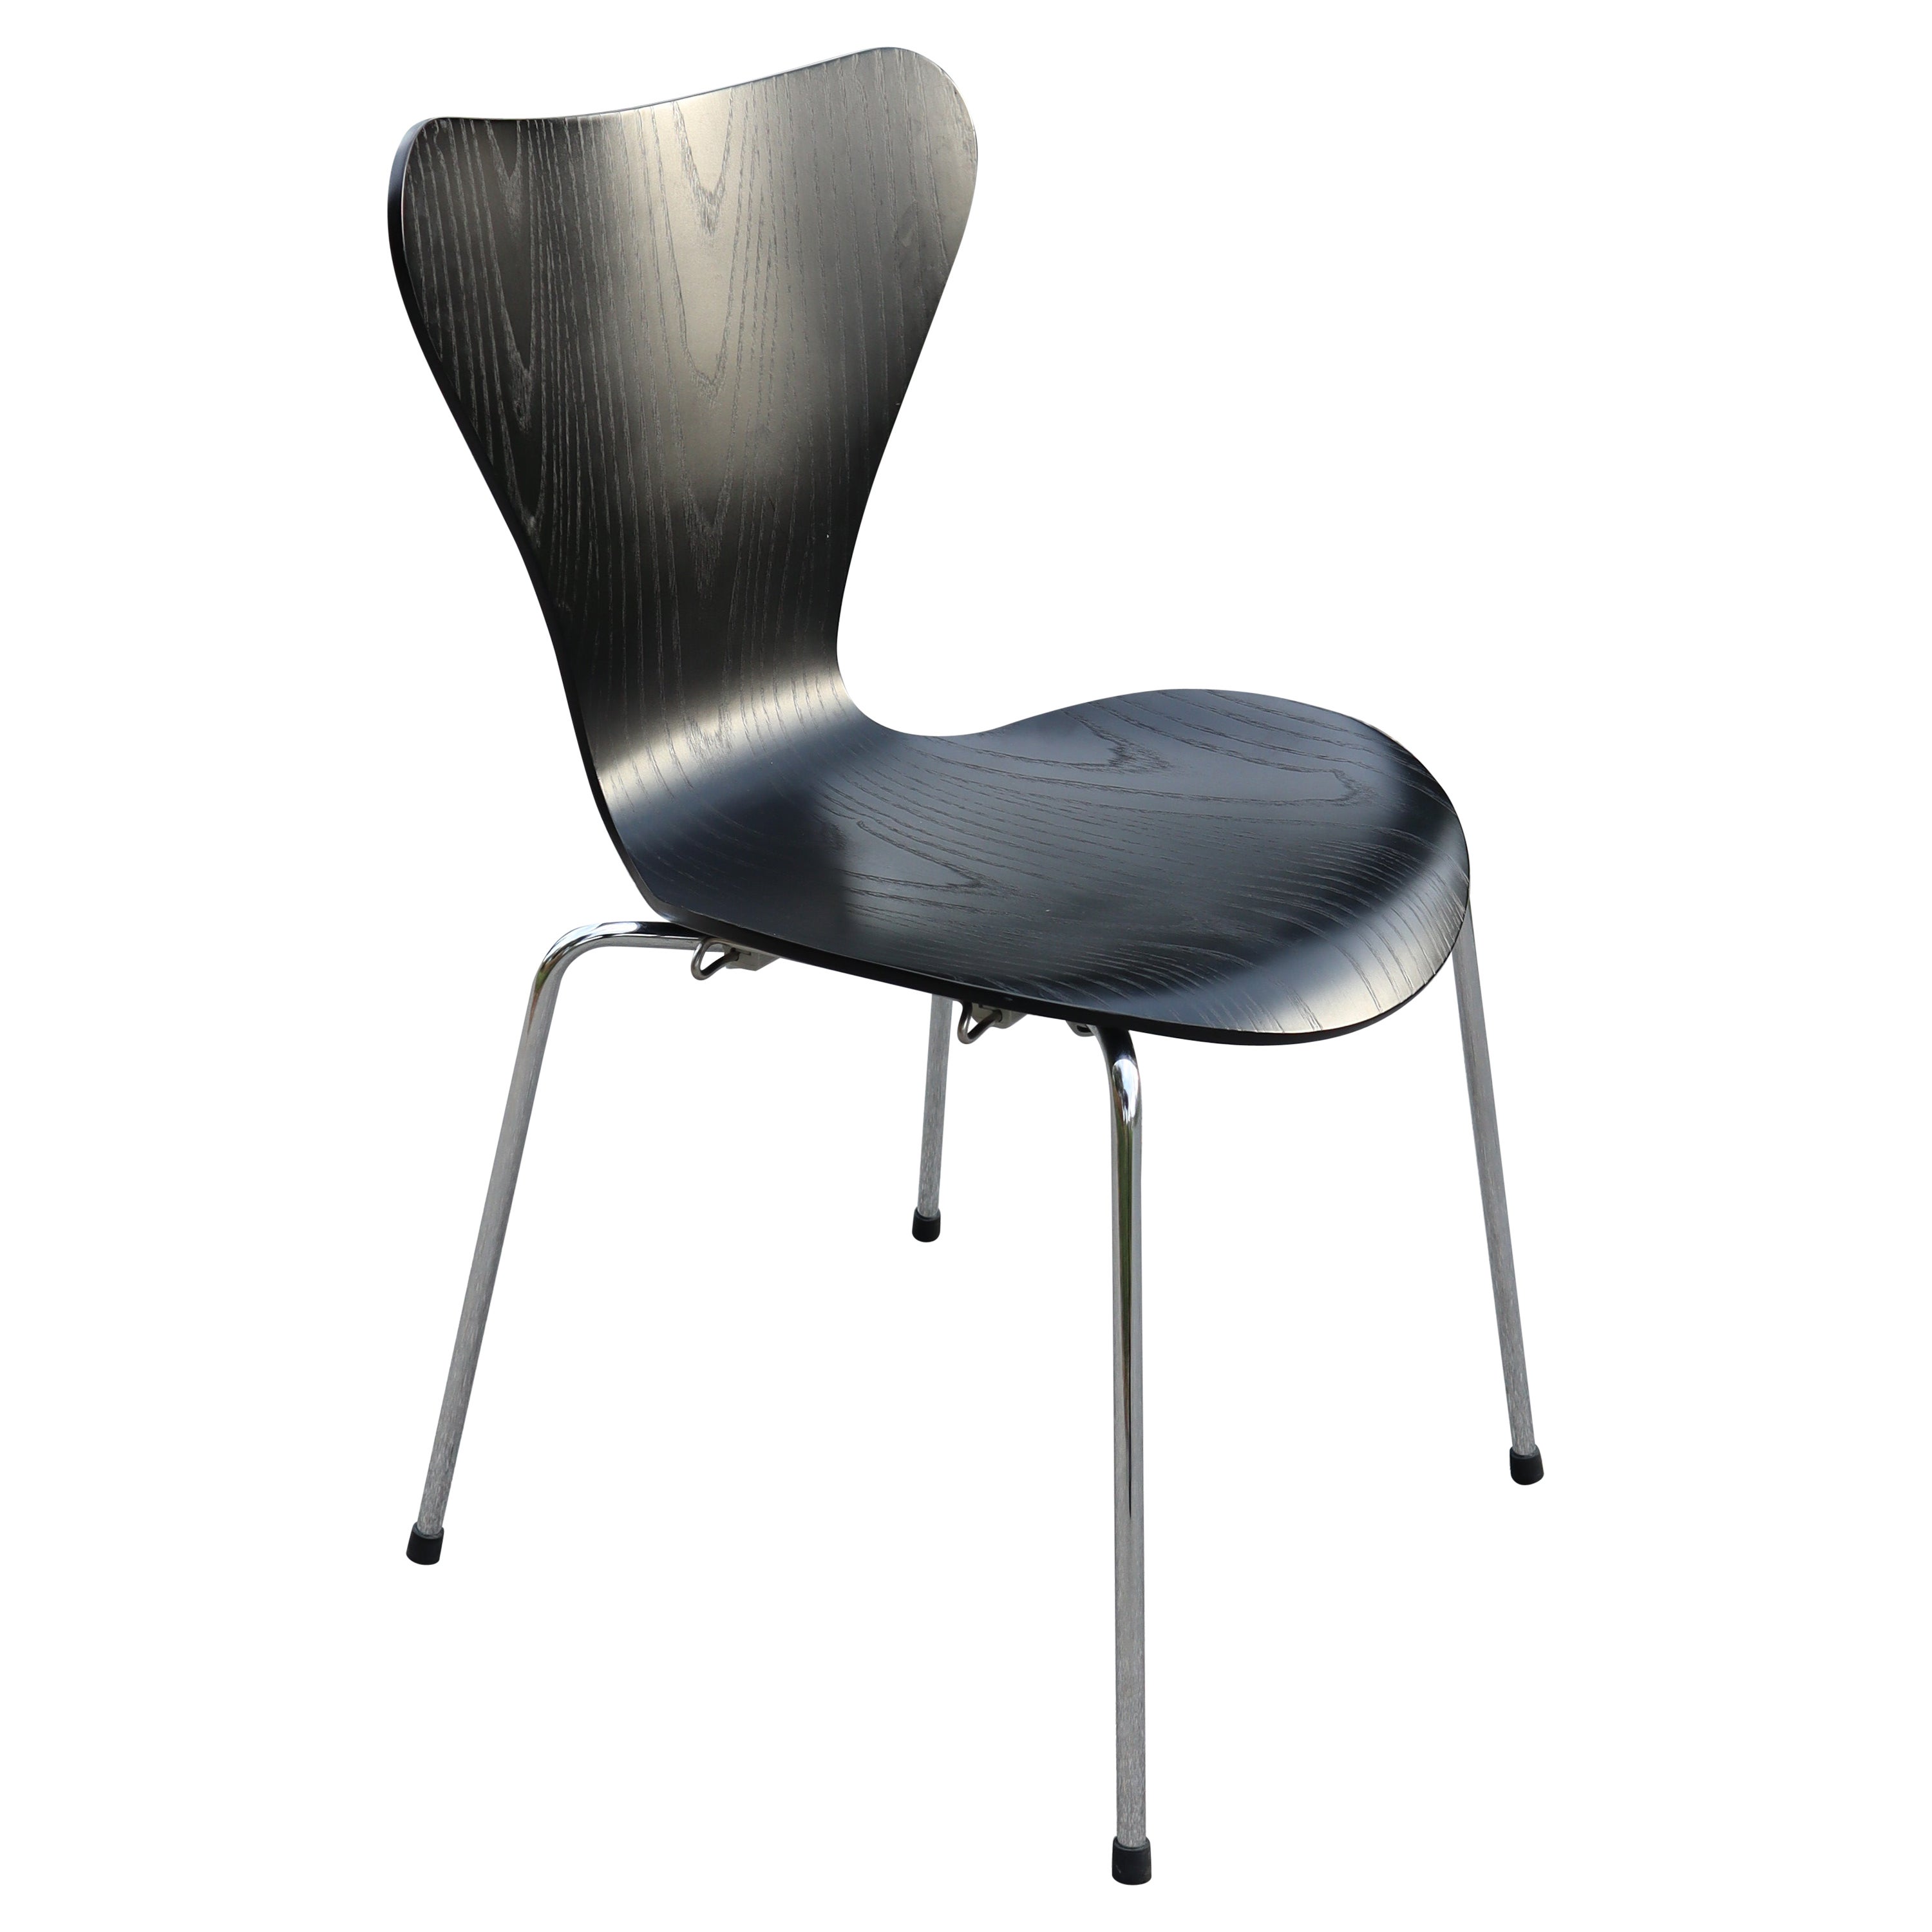 9 Arne Jacobsen Series 7 Chair for Fritz Hansen in Ebonized Ash